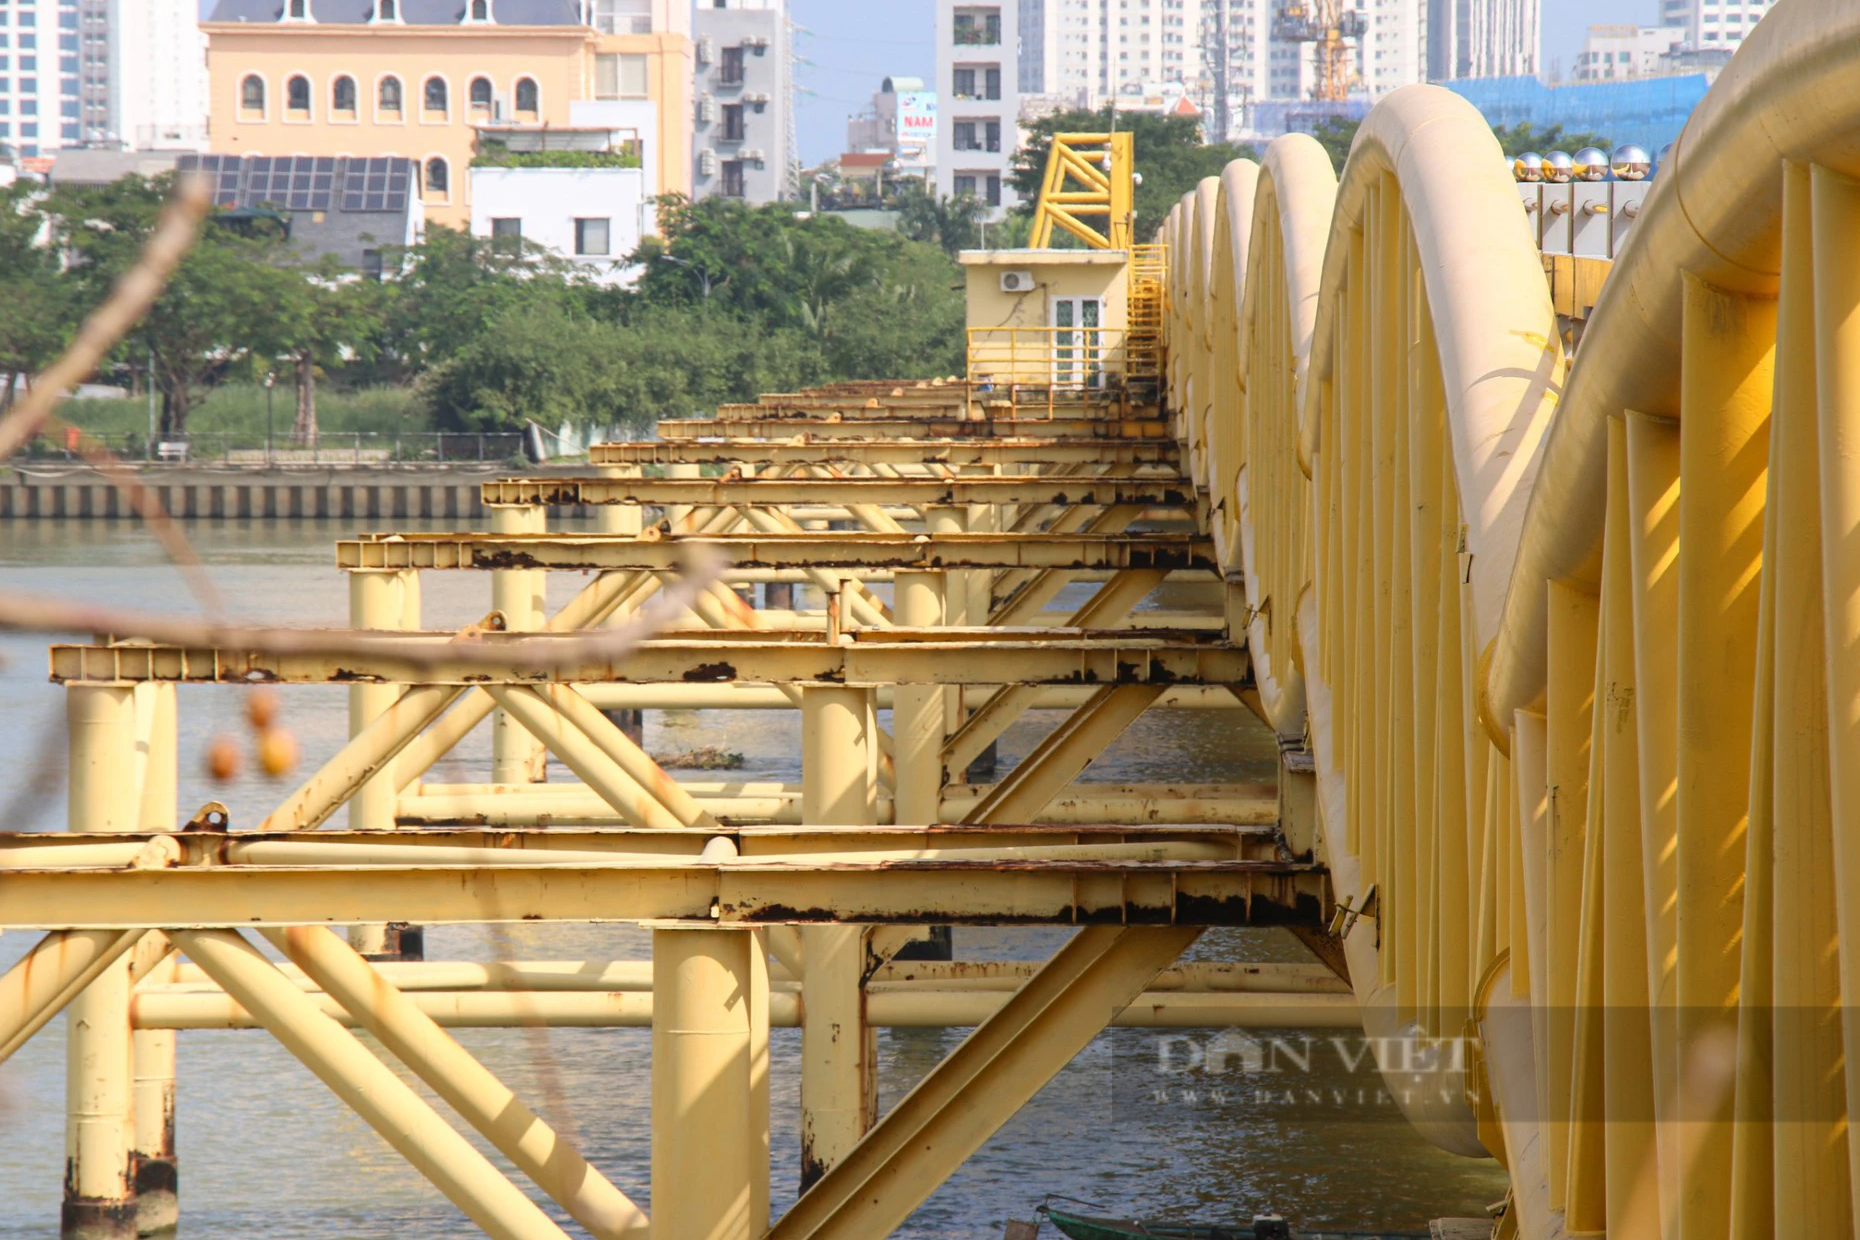 Cây cầu lâu đời nhất Đà Nẵng sẽ trở thành điểm du lịch đêm - Ảnh 7.